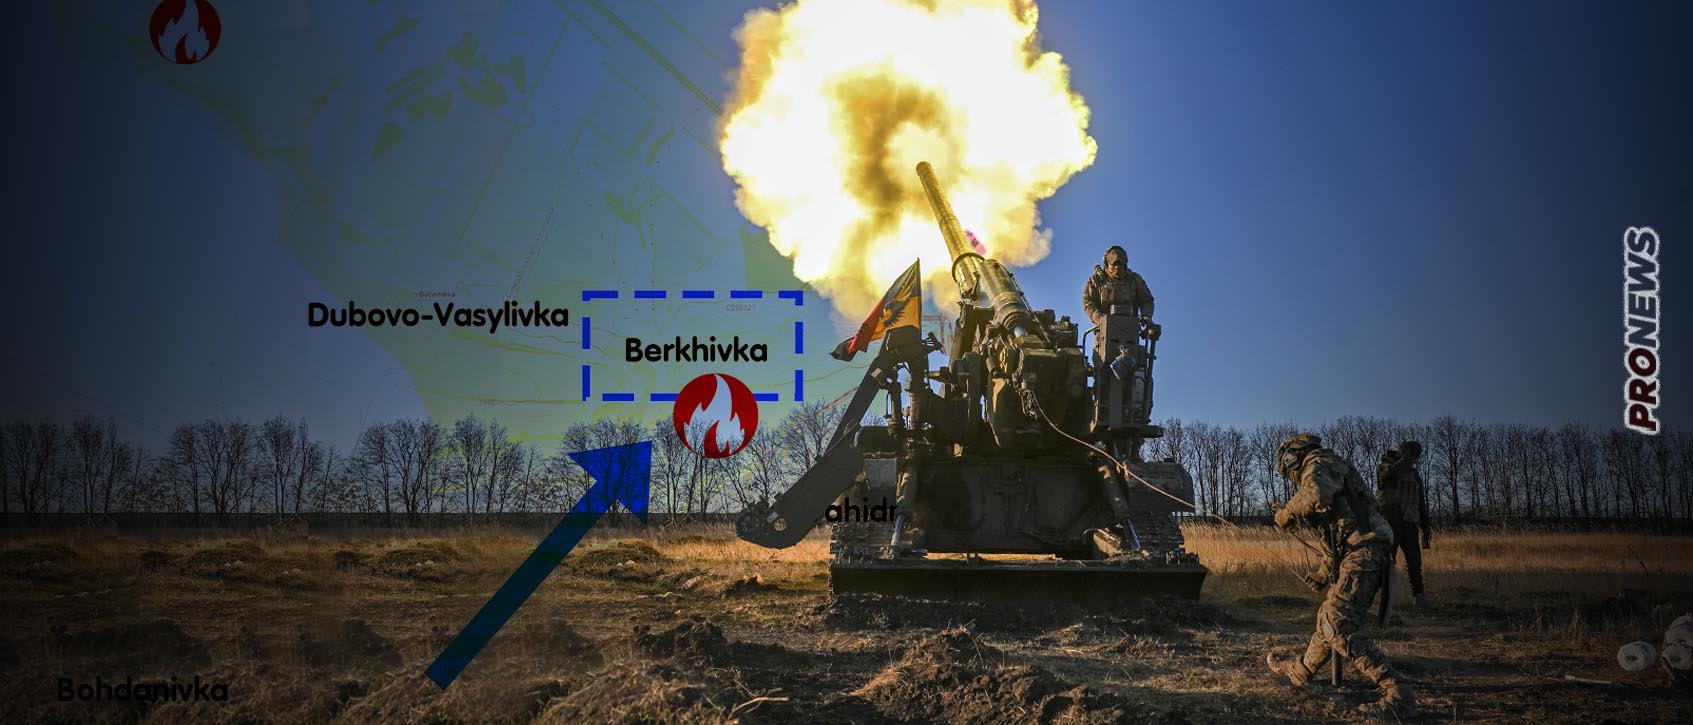 Ξεκίνησε η ουκρανική επίθεση – Πιέζονται οι Ρώσοι – «Αποκρούσαμε την επίθεση» λέει η Μόσχα αλλά υπό ουκρανικό έλεγχο η Μπερχίβκα